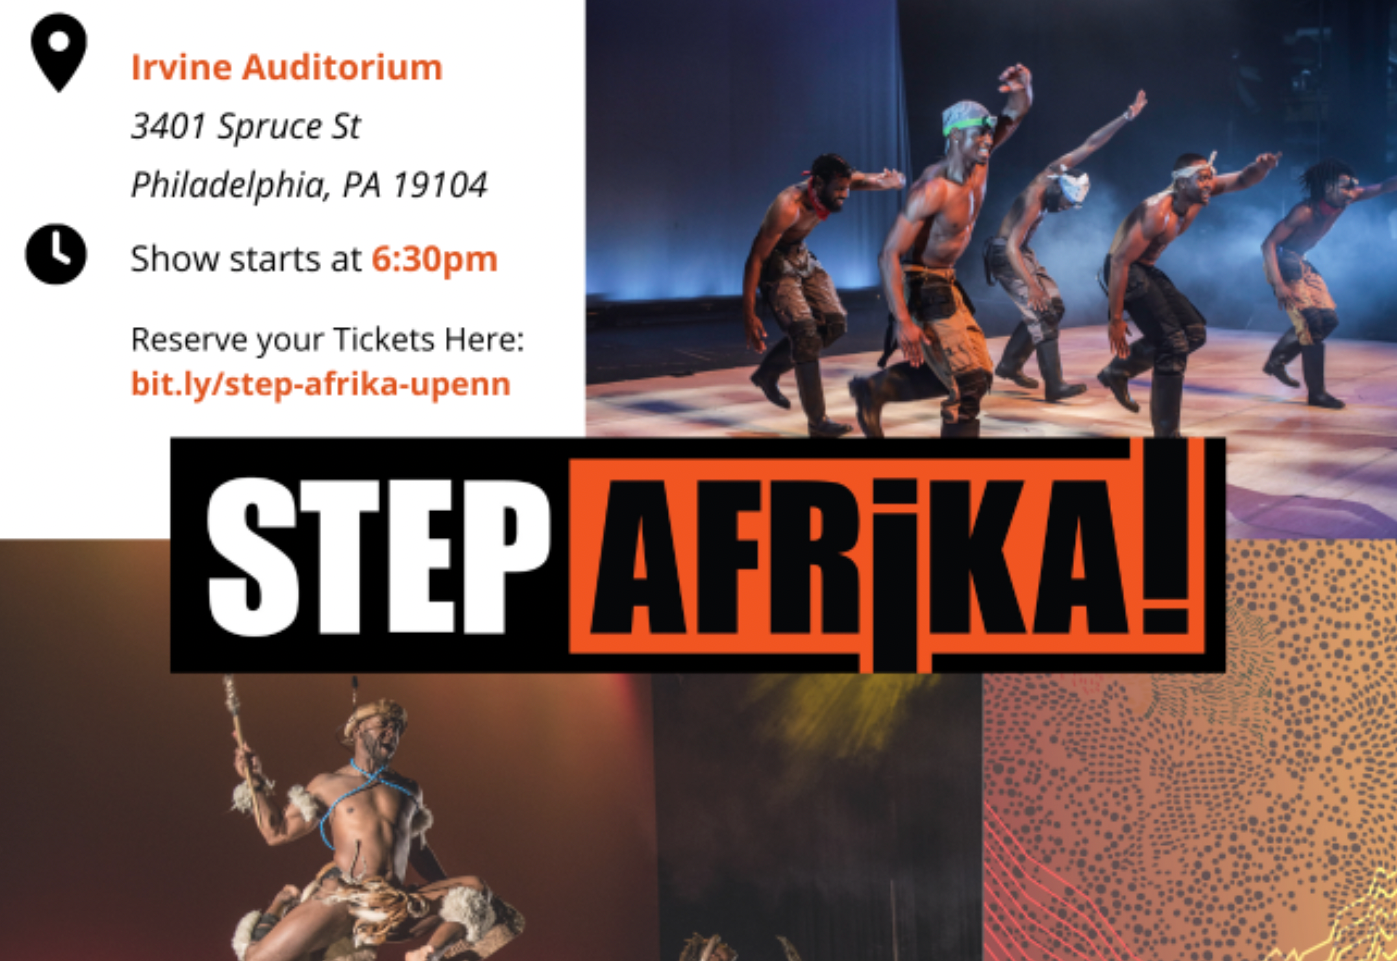 Step Afrika event flyer